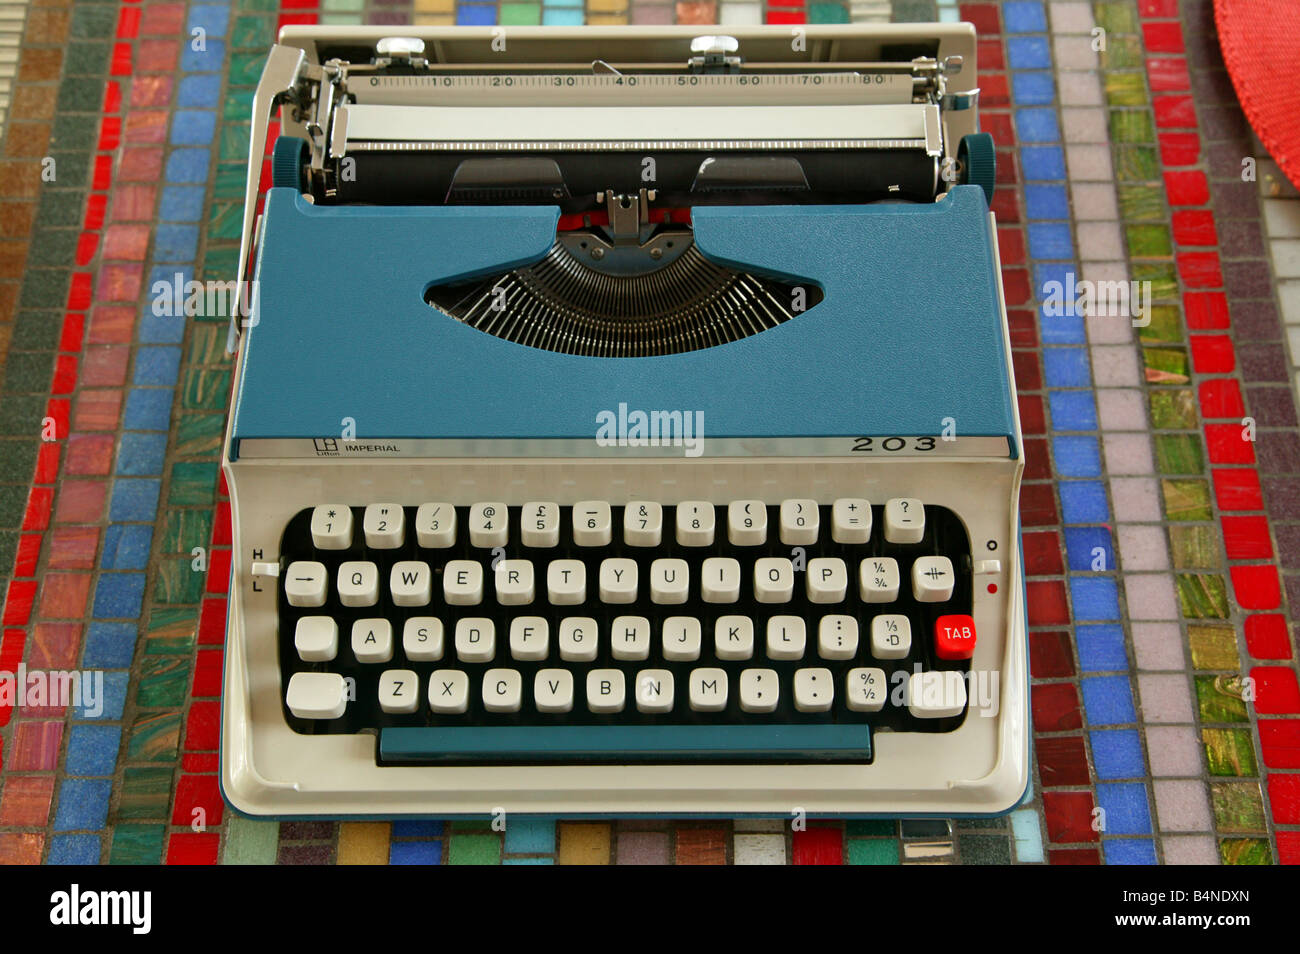 Litton Imperial Mercury Portable Typewriter BLACK Typewriter Ribbon 